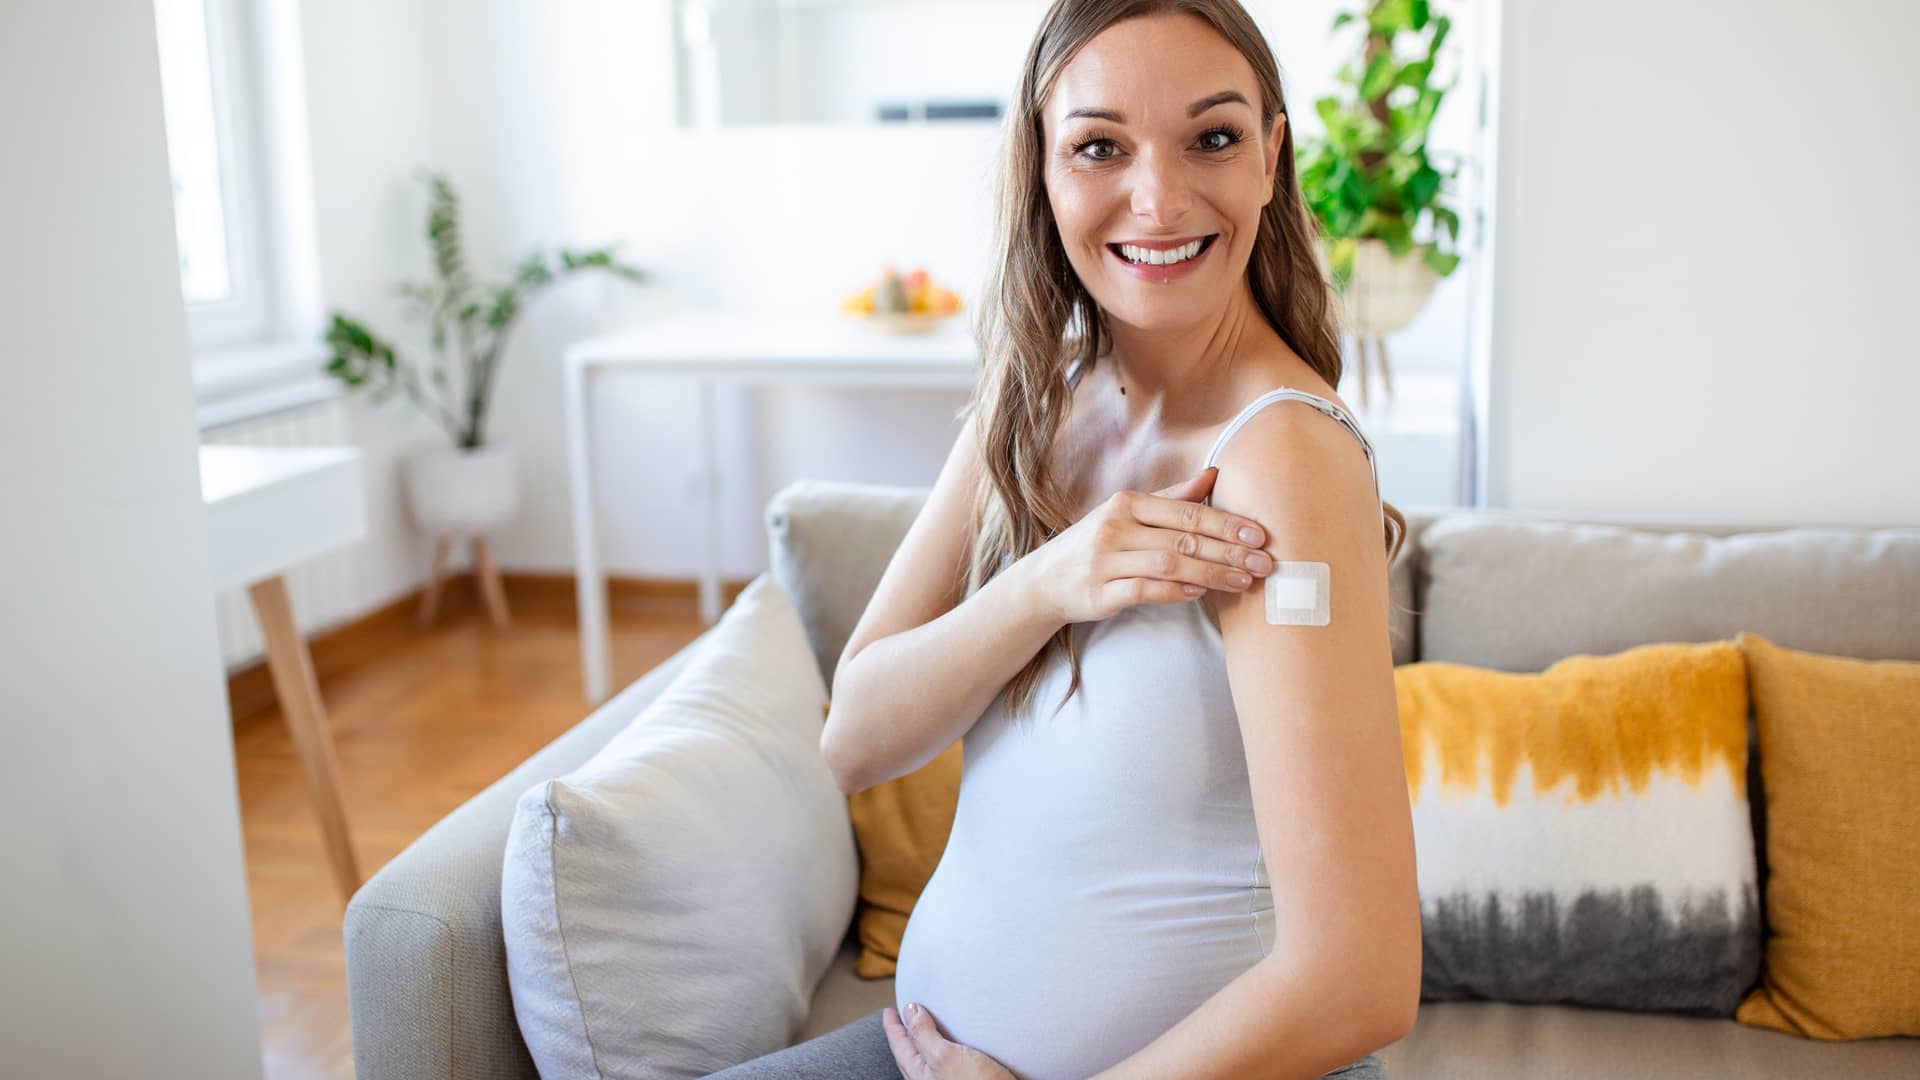 28 semanas de embarazo: vacuna gammaglobulina anti D si eres Rh negativa